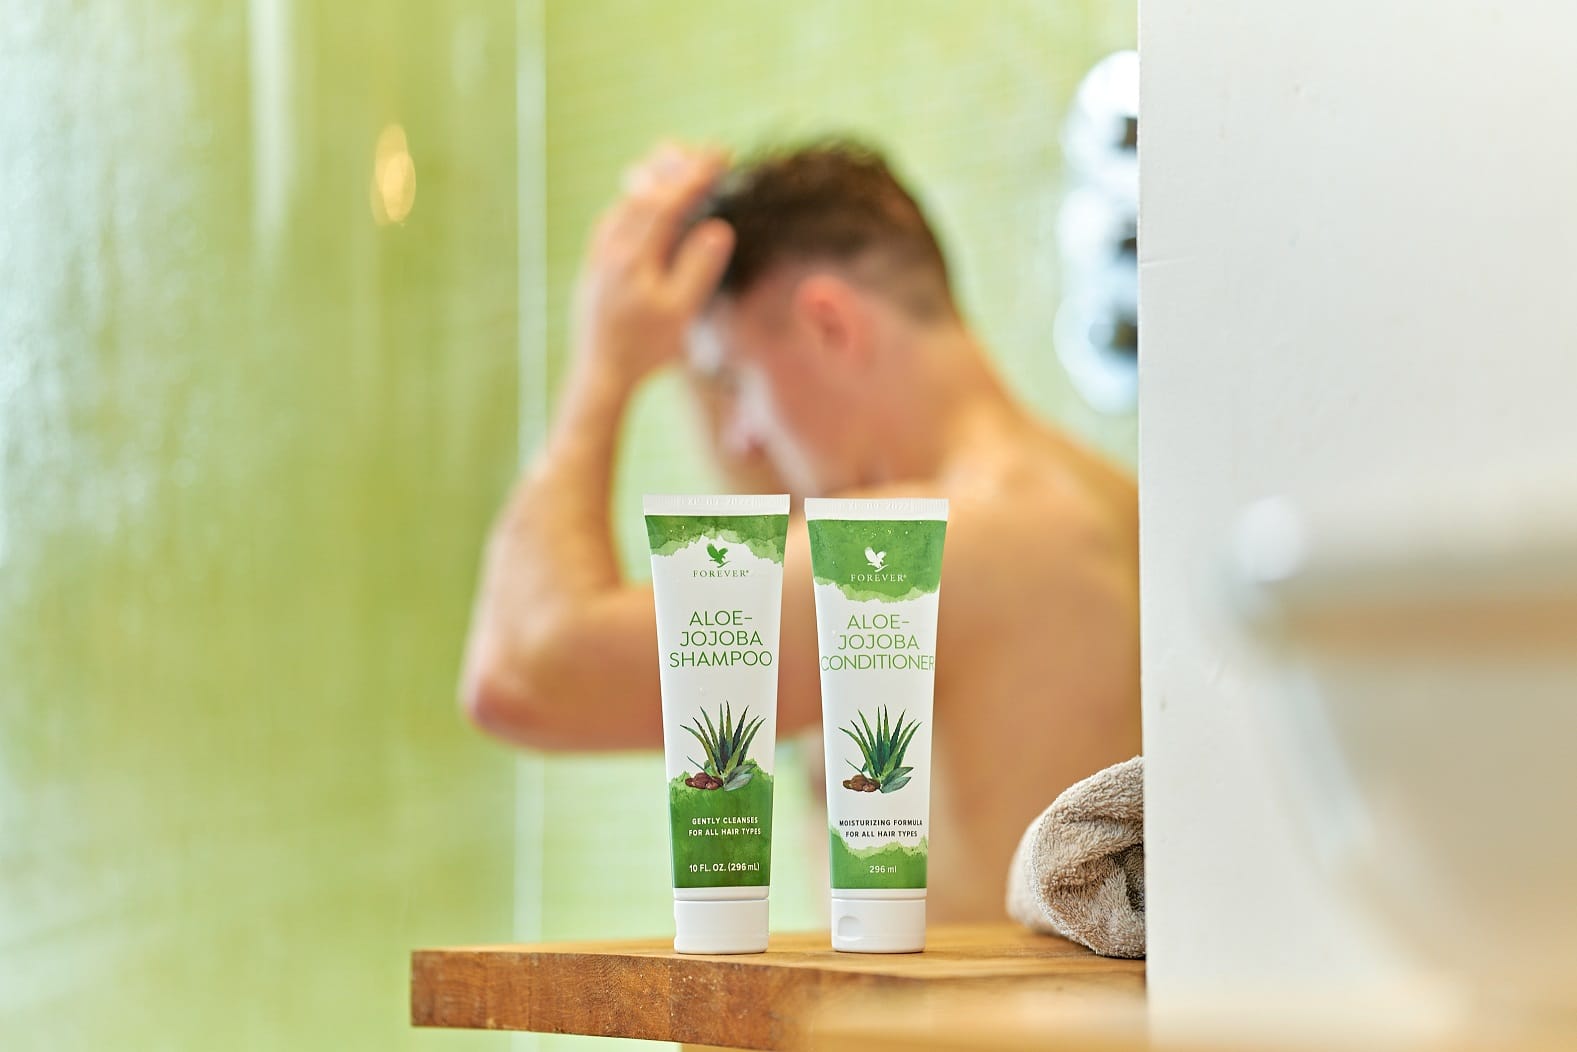 Dallo shampoo al dopobarba: i prodotti all’aloe per capelli e barba